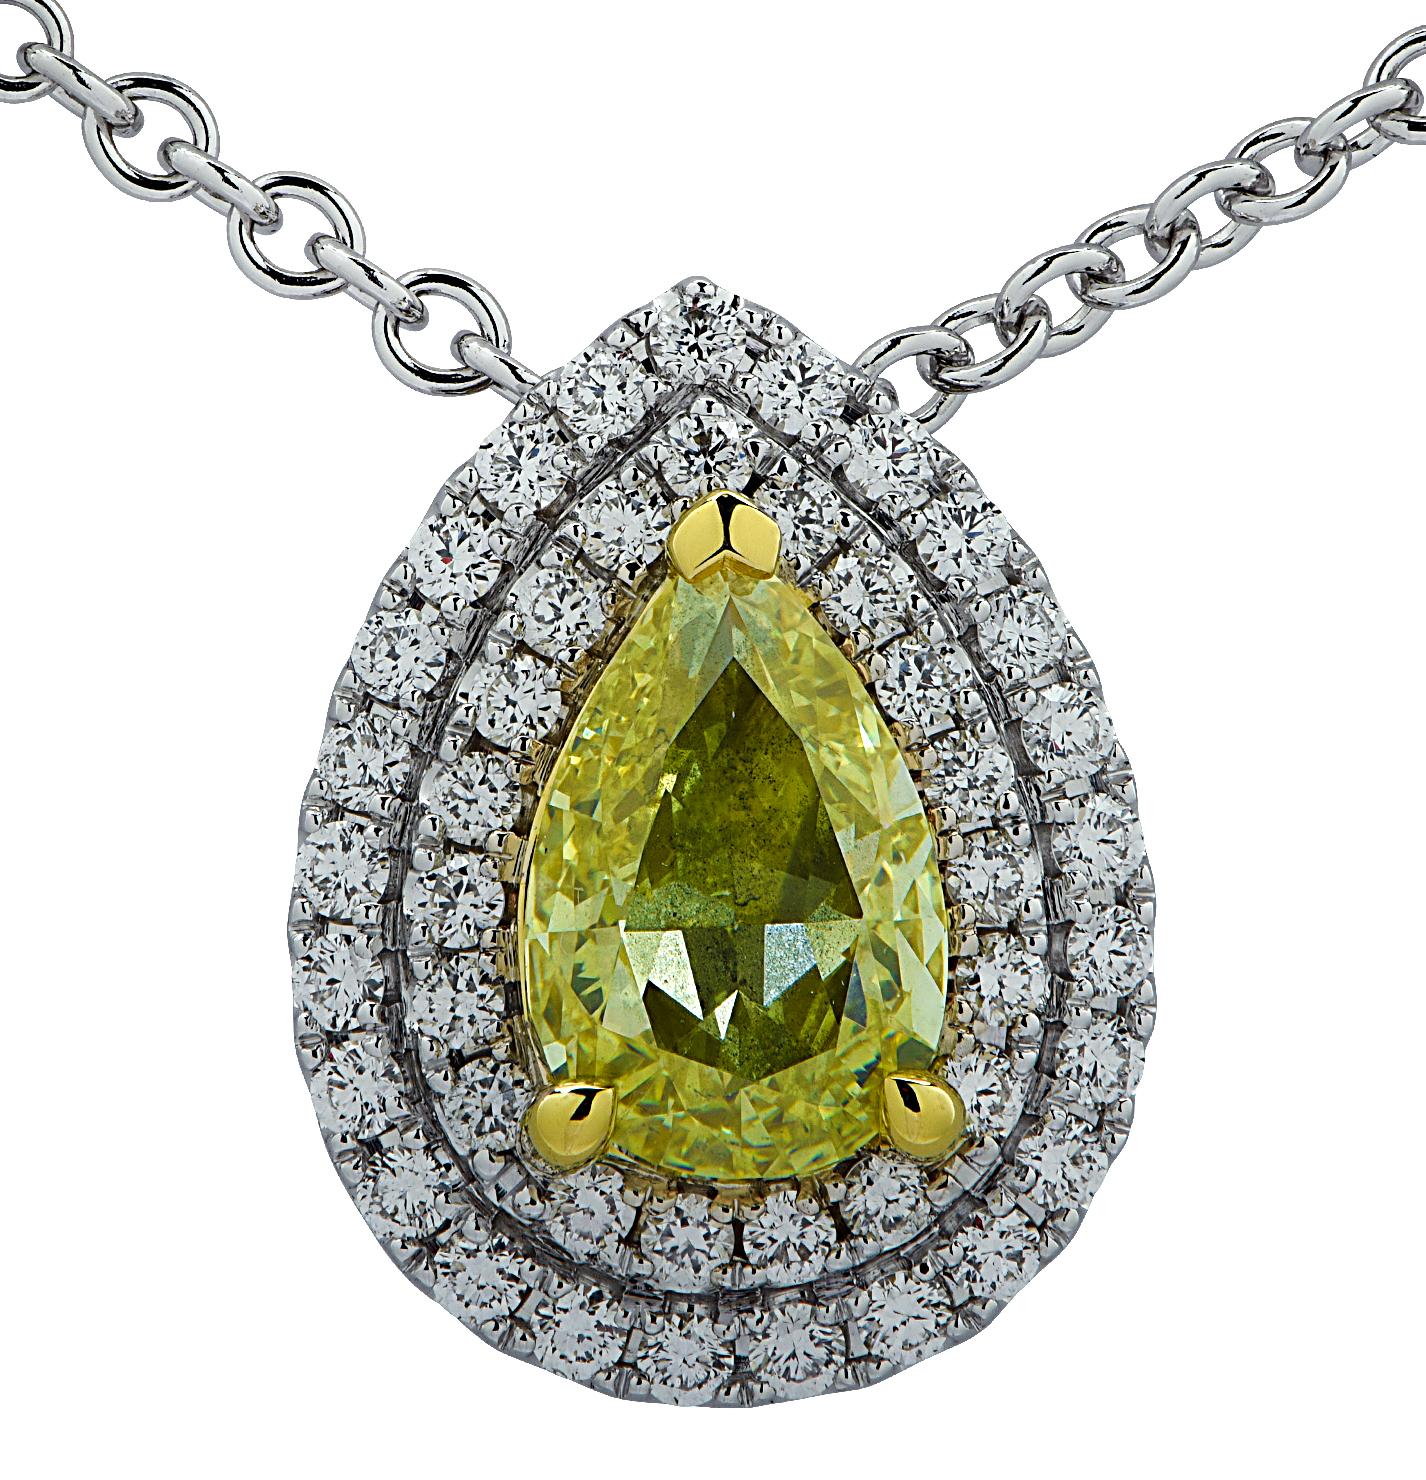 Superbe collier Vivid Diamonds en or 18 carats, présentant un diamant de forme poire jaune de fantaisie certifié GIA pesant 1.01 carats, et 44 diamants ronds de taille brillant pesant 33 carats au total, couleur G, pureté VS-SI. Le diamant jaune en